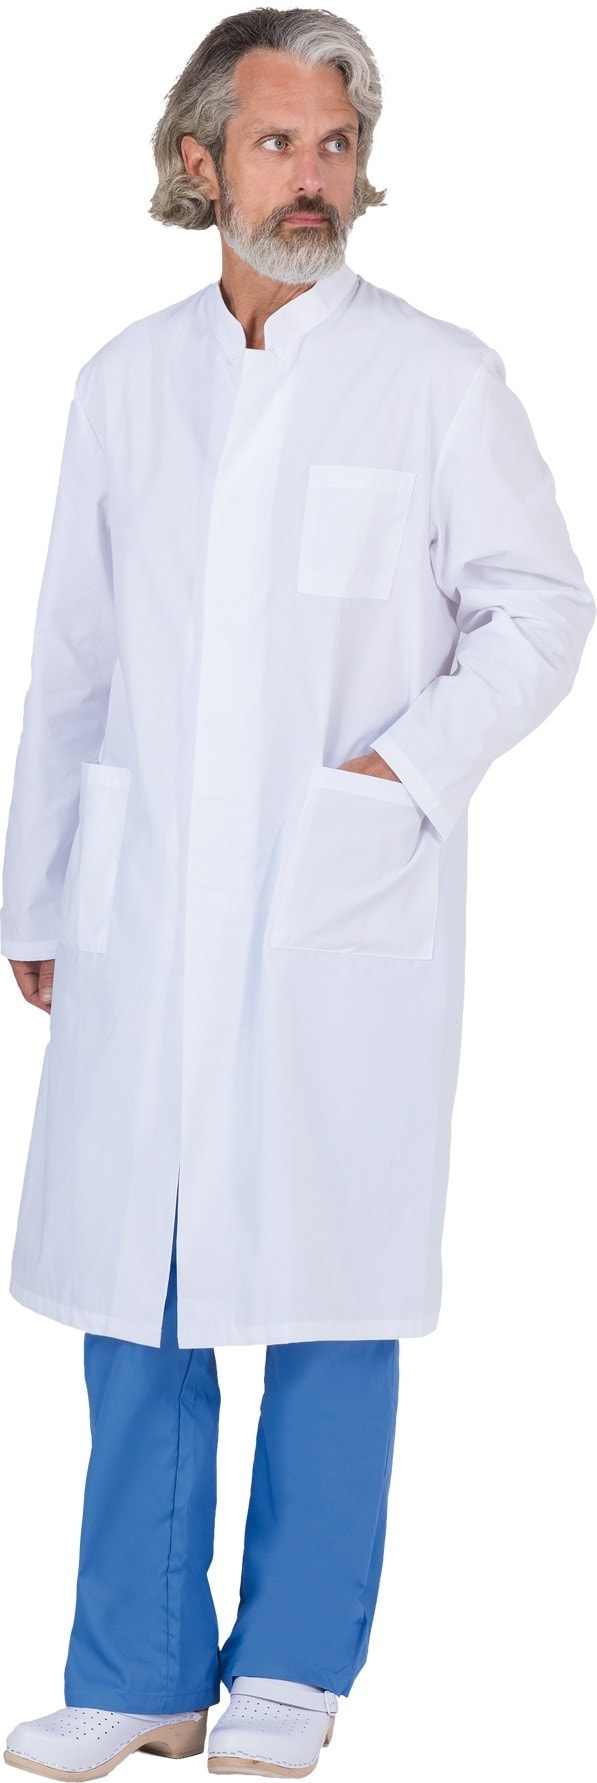 Pánsky zdravotnícky plášť  MOSSO